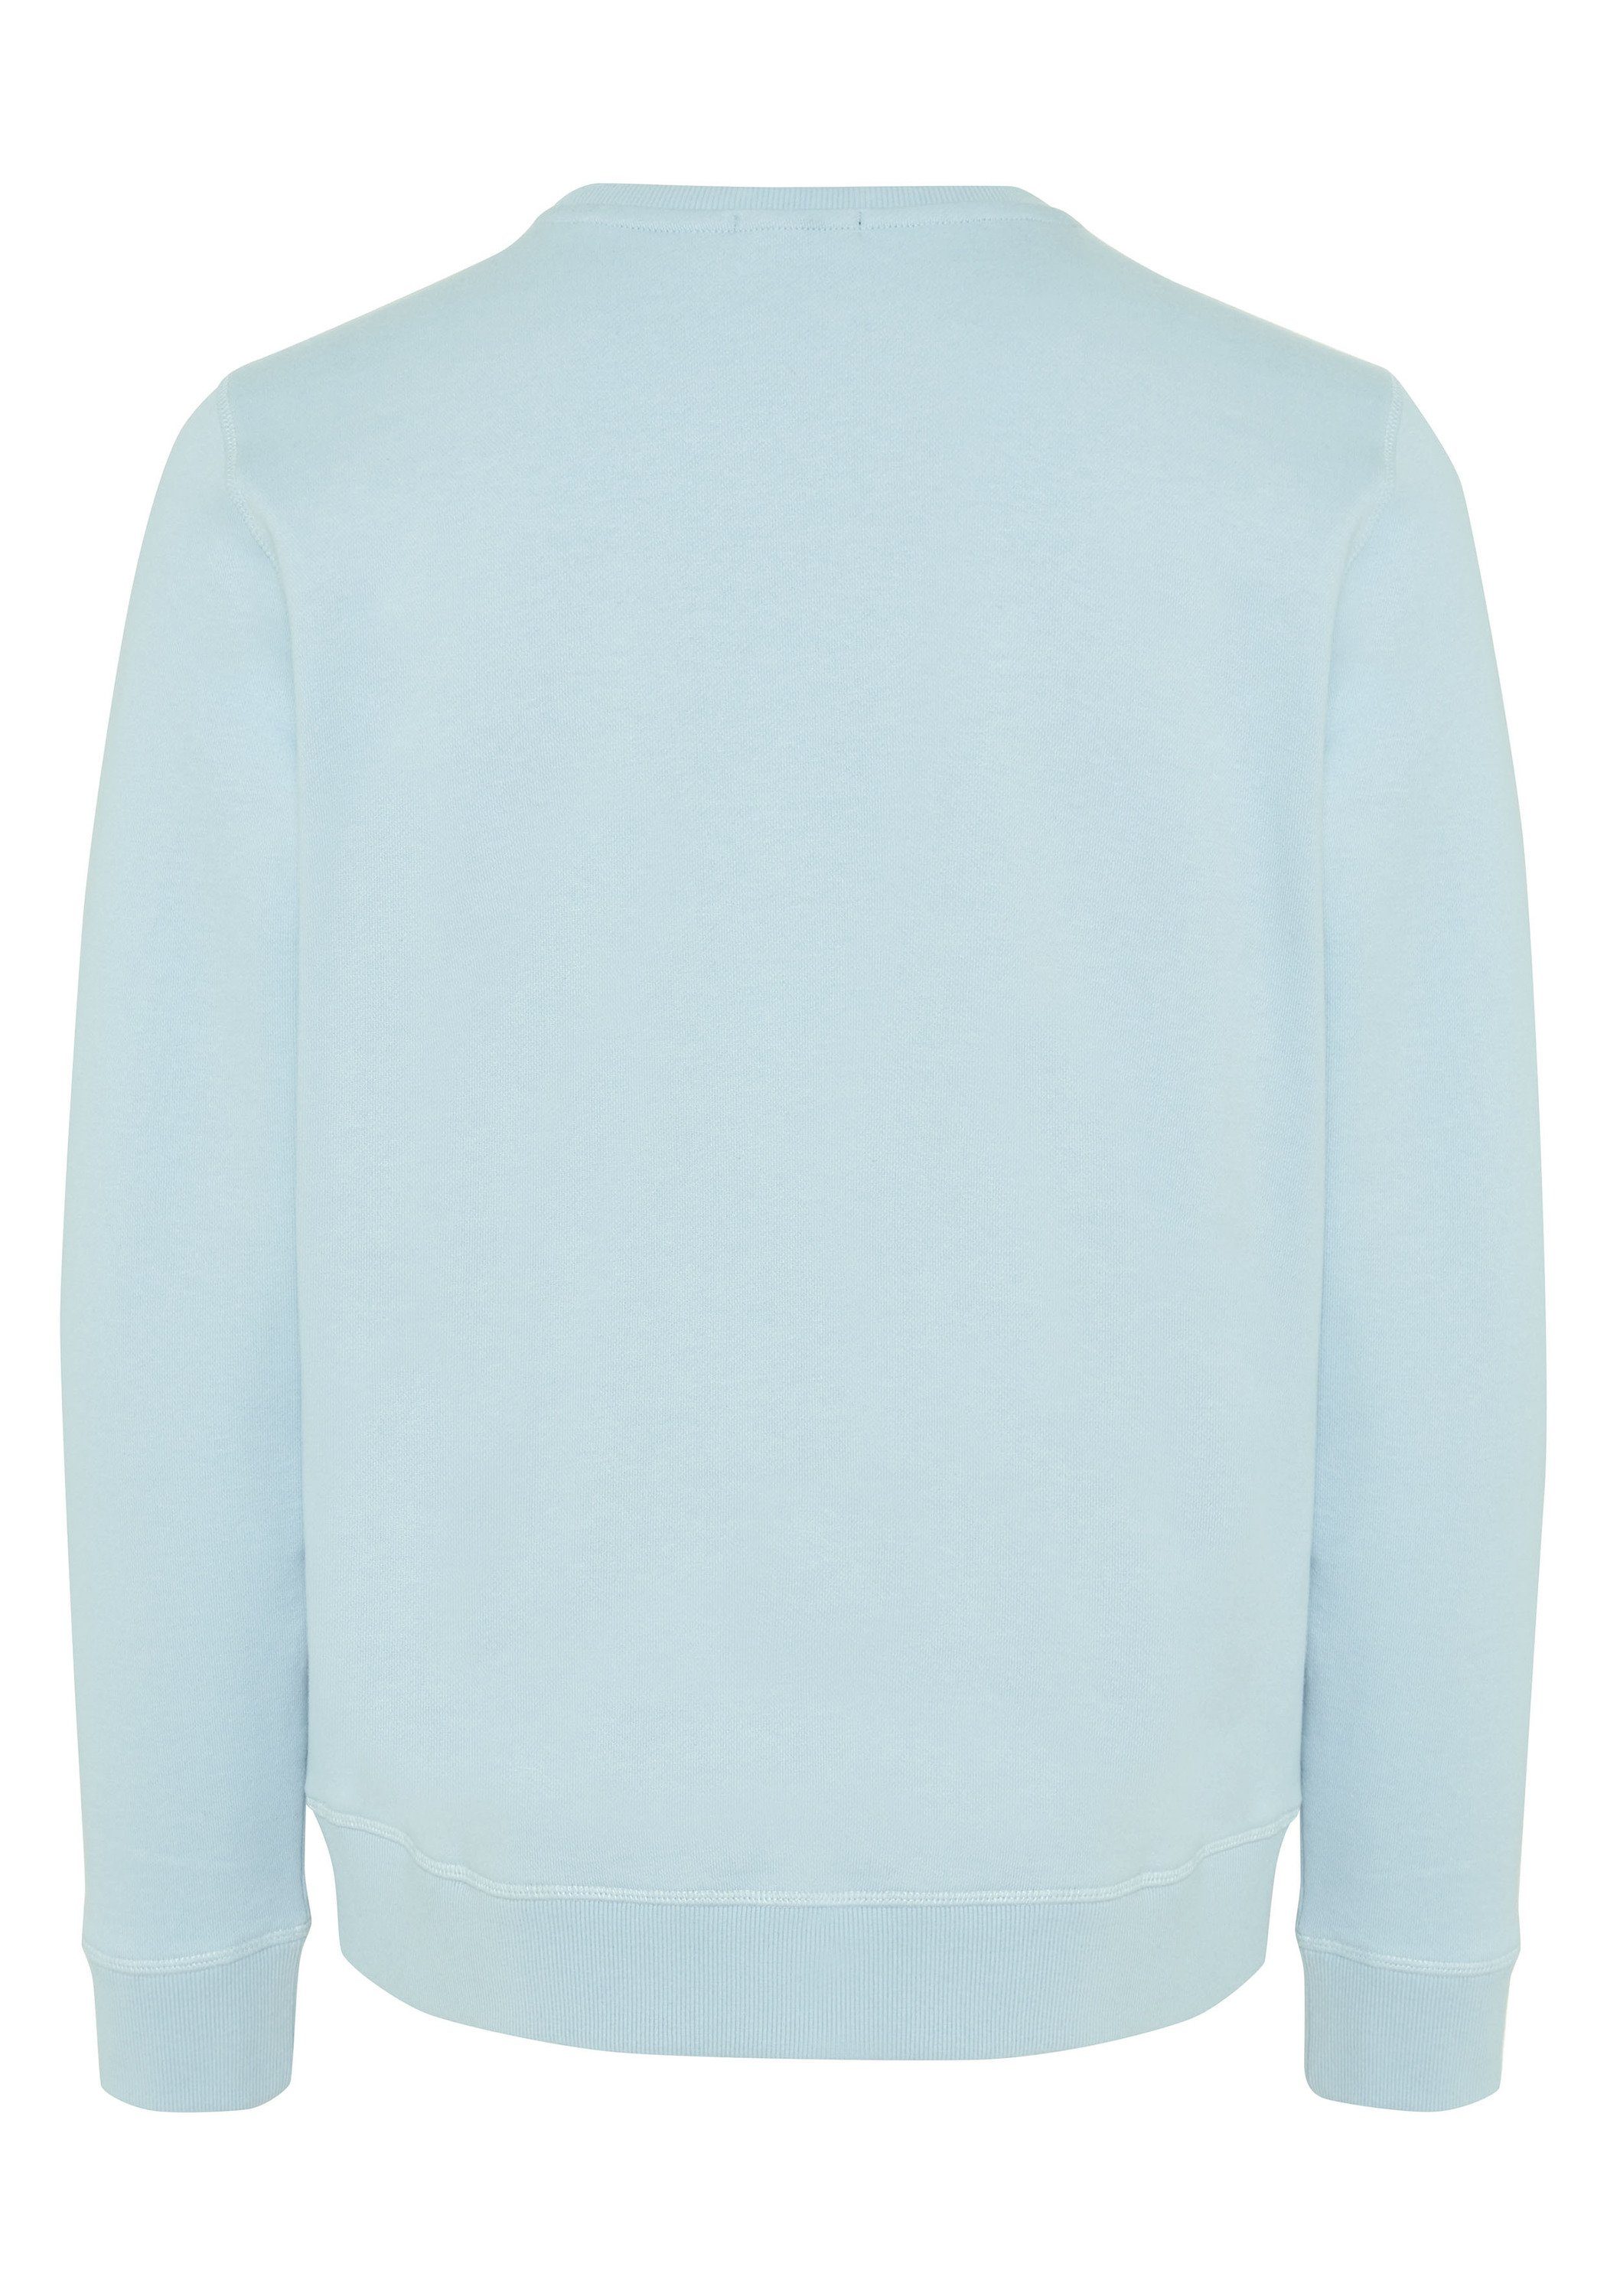 Chiemsee Sweatshirt Sweatshirt im trendigen blau 1 mittel PlusMinus-Design